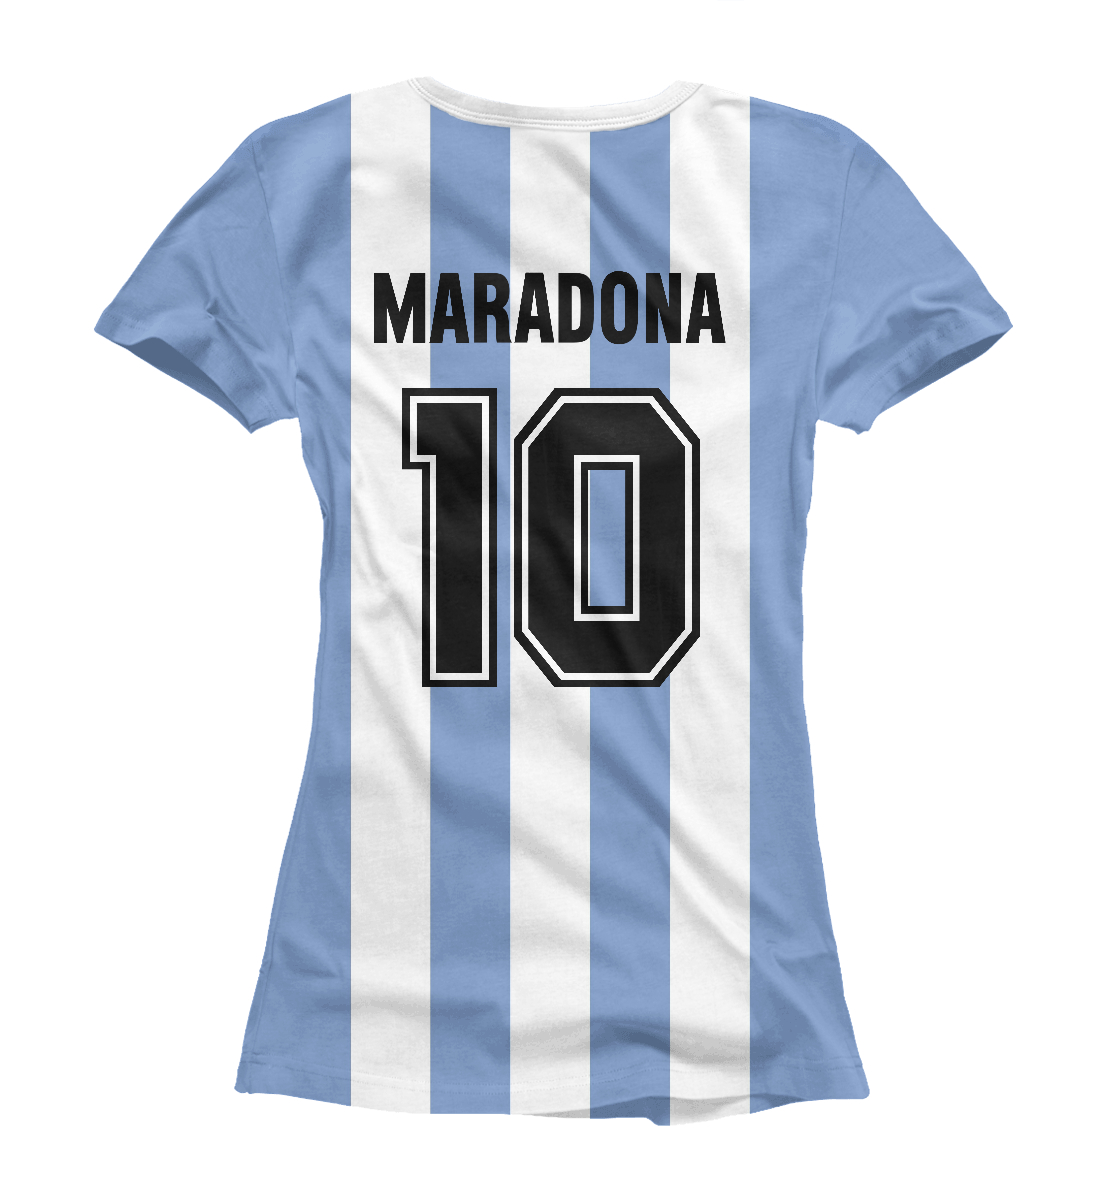 Детская Футболка Maradona для девочек, артикул SAN-232235-fut-1mp - фото 2